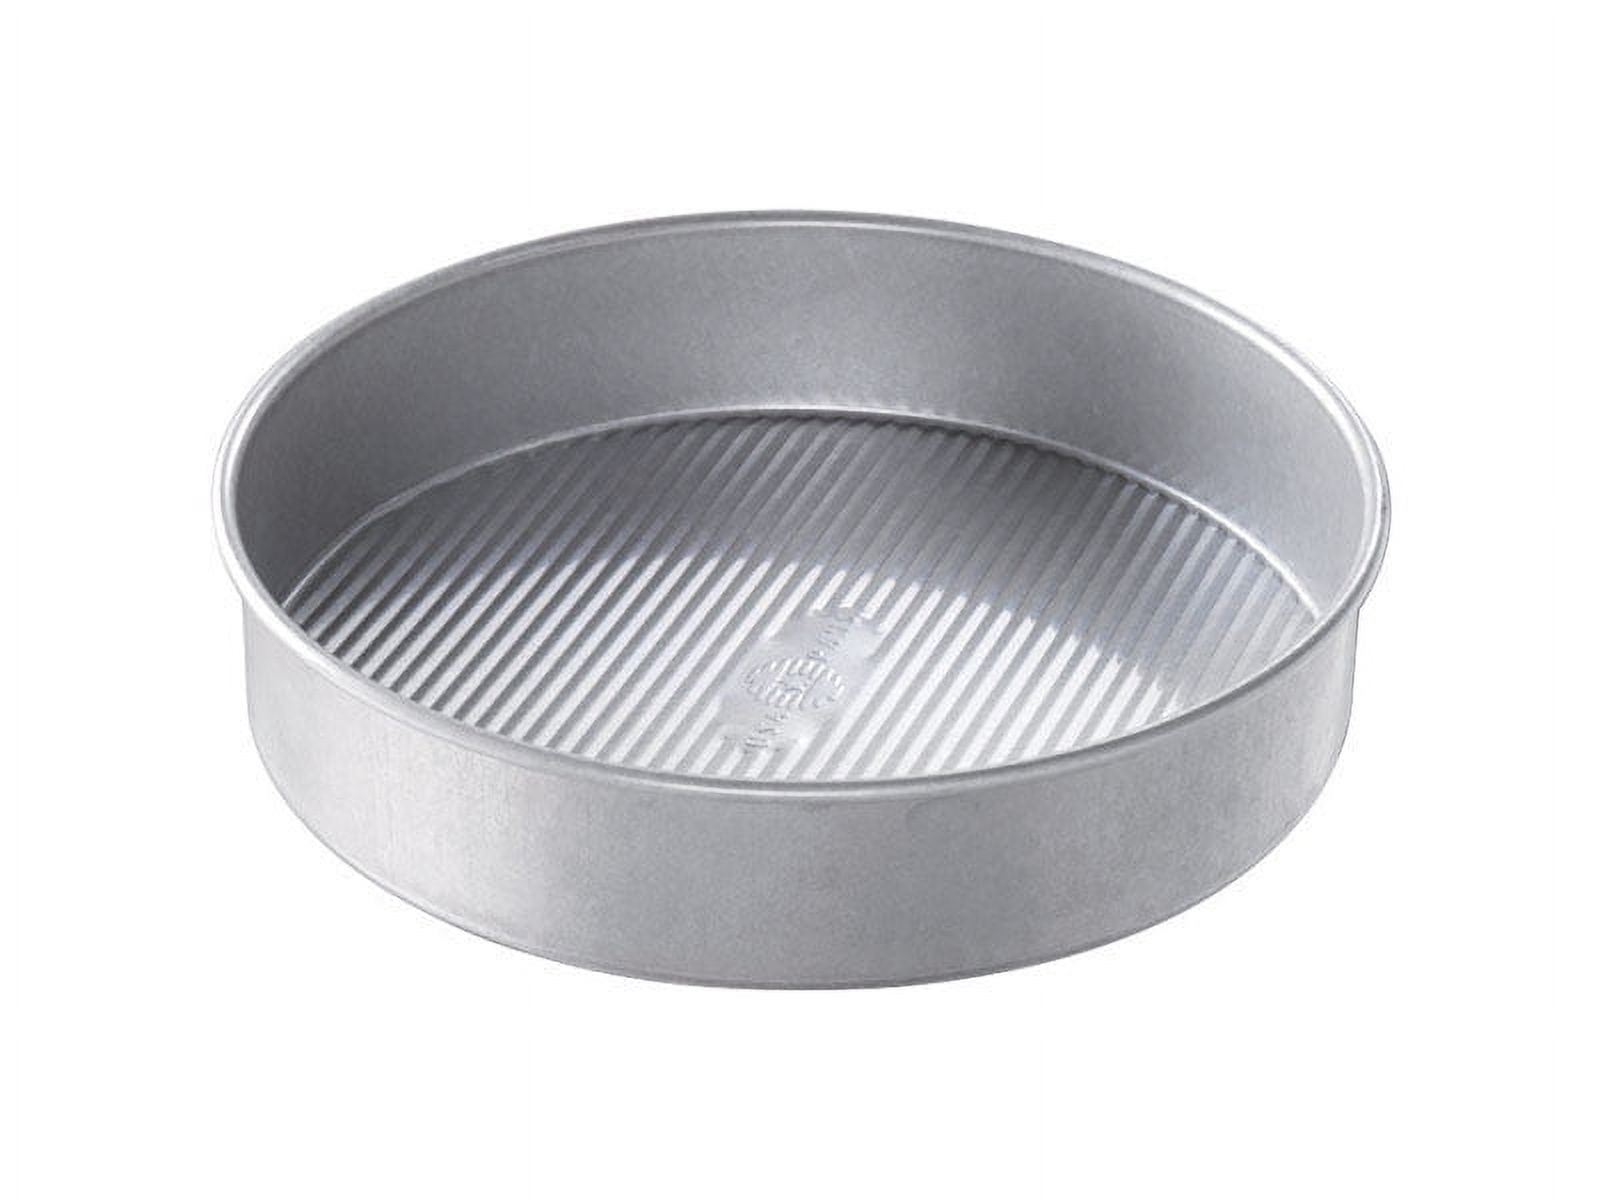 Karaca Metal Cake Pan Bakeware Non-Stick Rectangular Baking Pan 9.45 12.6 inch Nonstick Baking Pans for Cheesecake Pan, Size: 9.45 х 12.6 (24 х 32 cm)